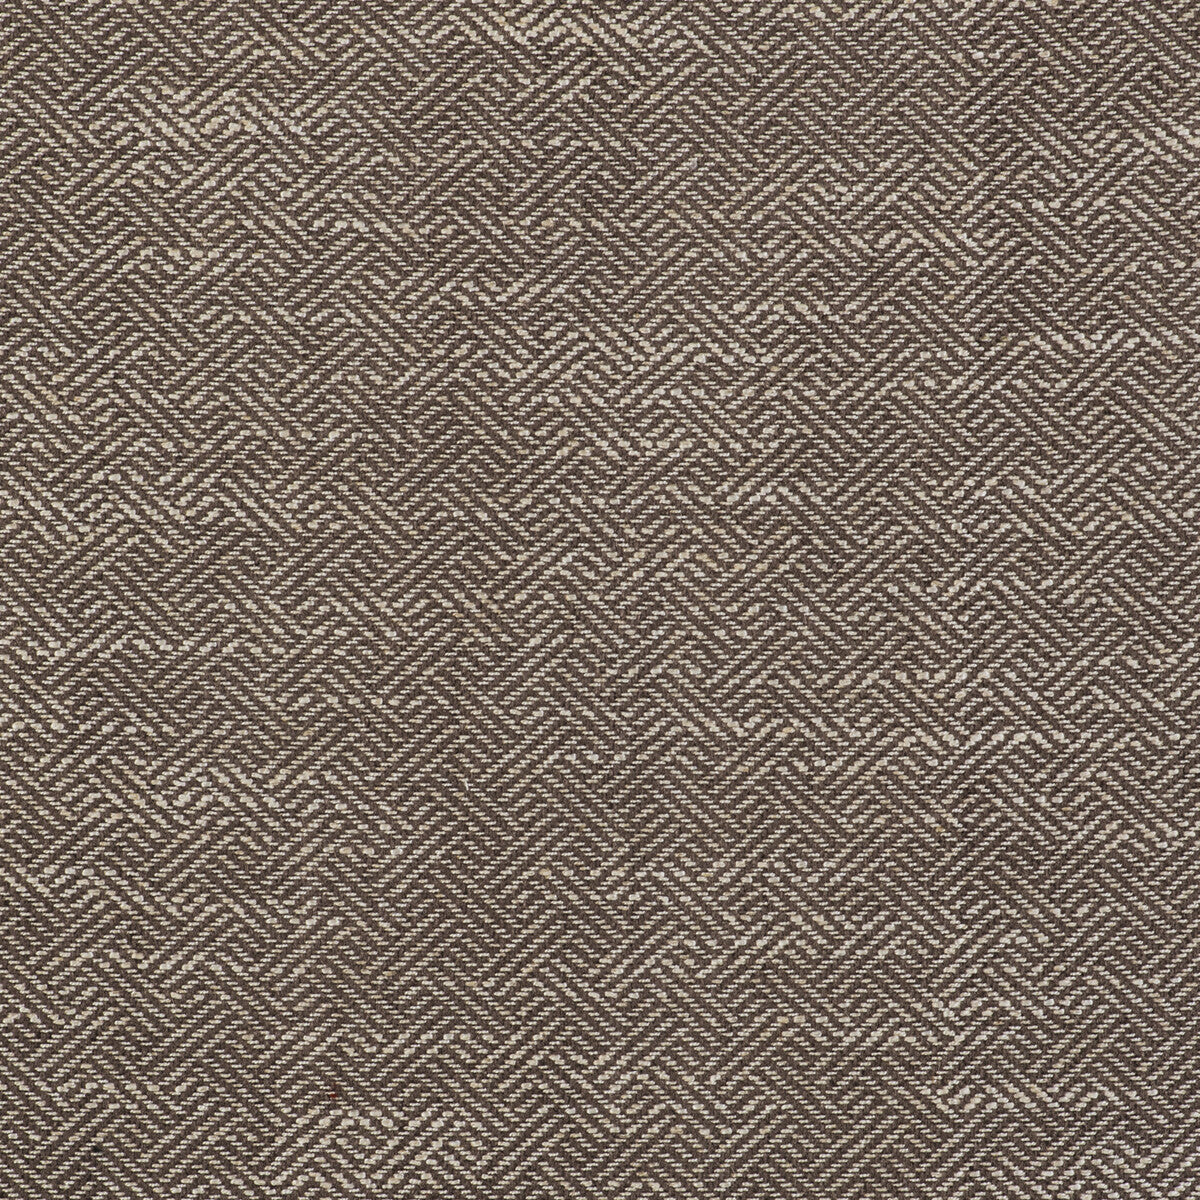 Enea fabric in tostado color - pattern GDT5518.002.0 - by Gaston y Daniela in the Gaston Libreria collection